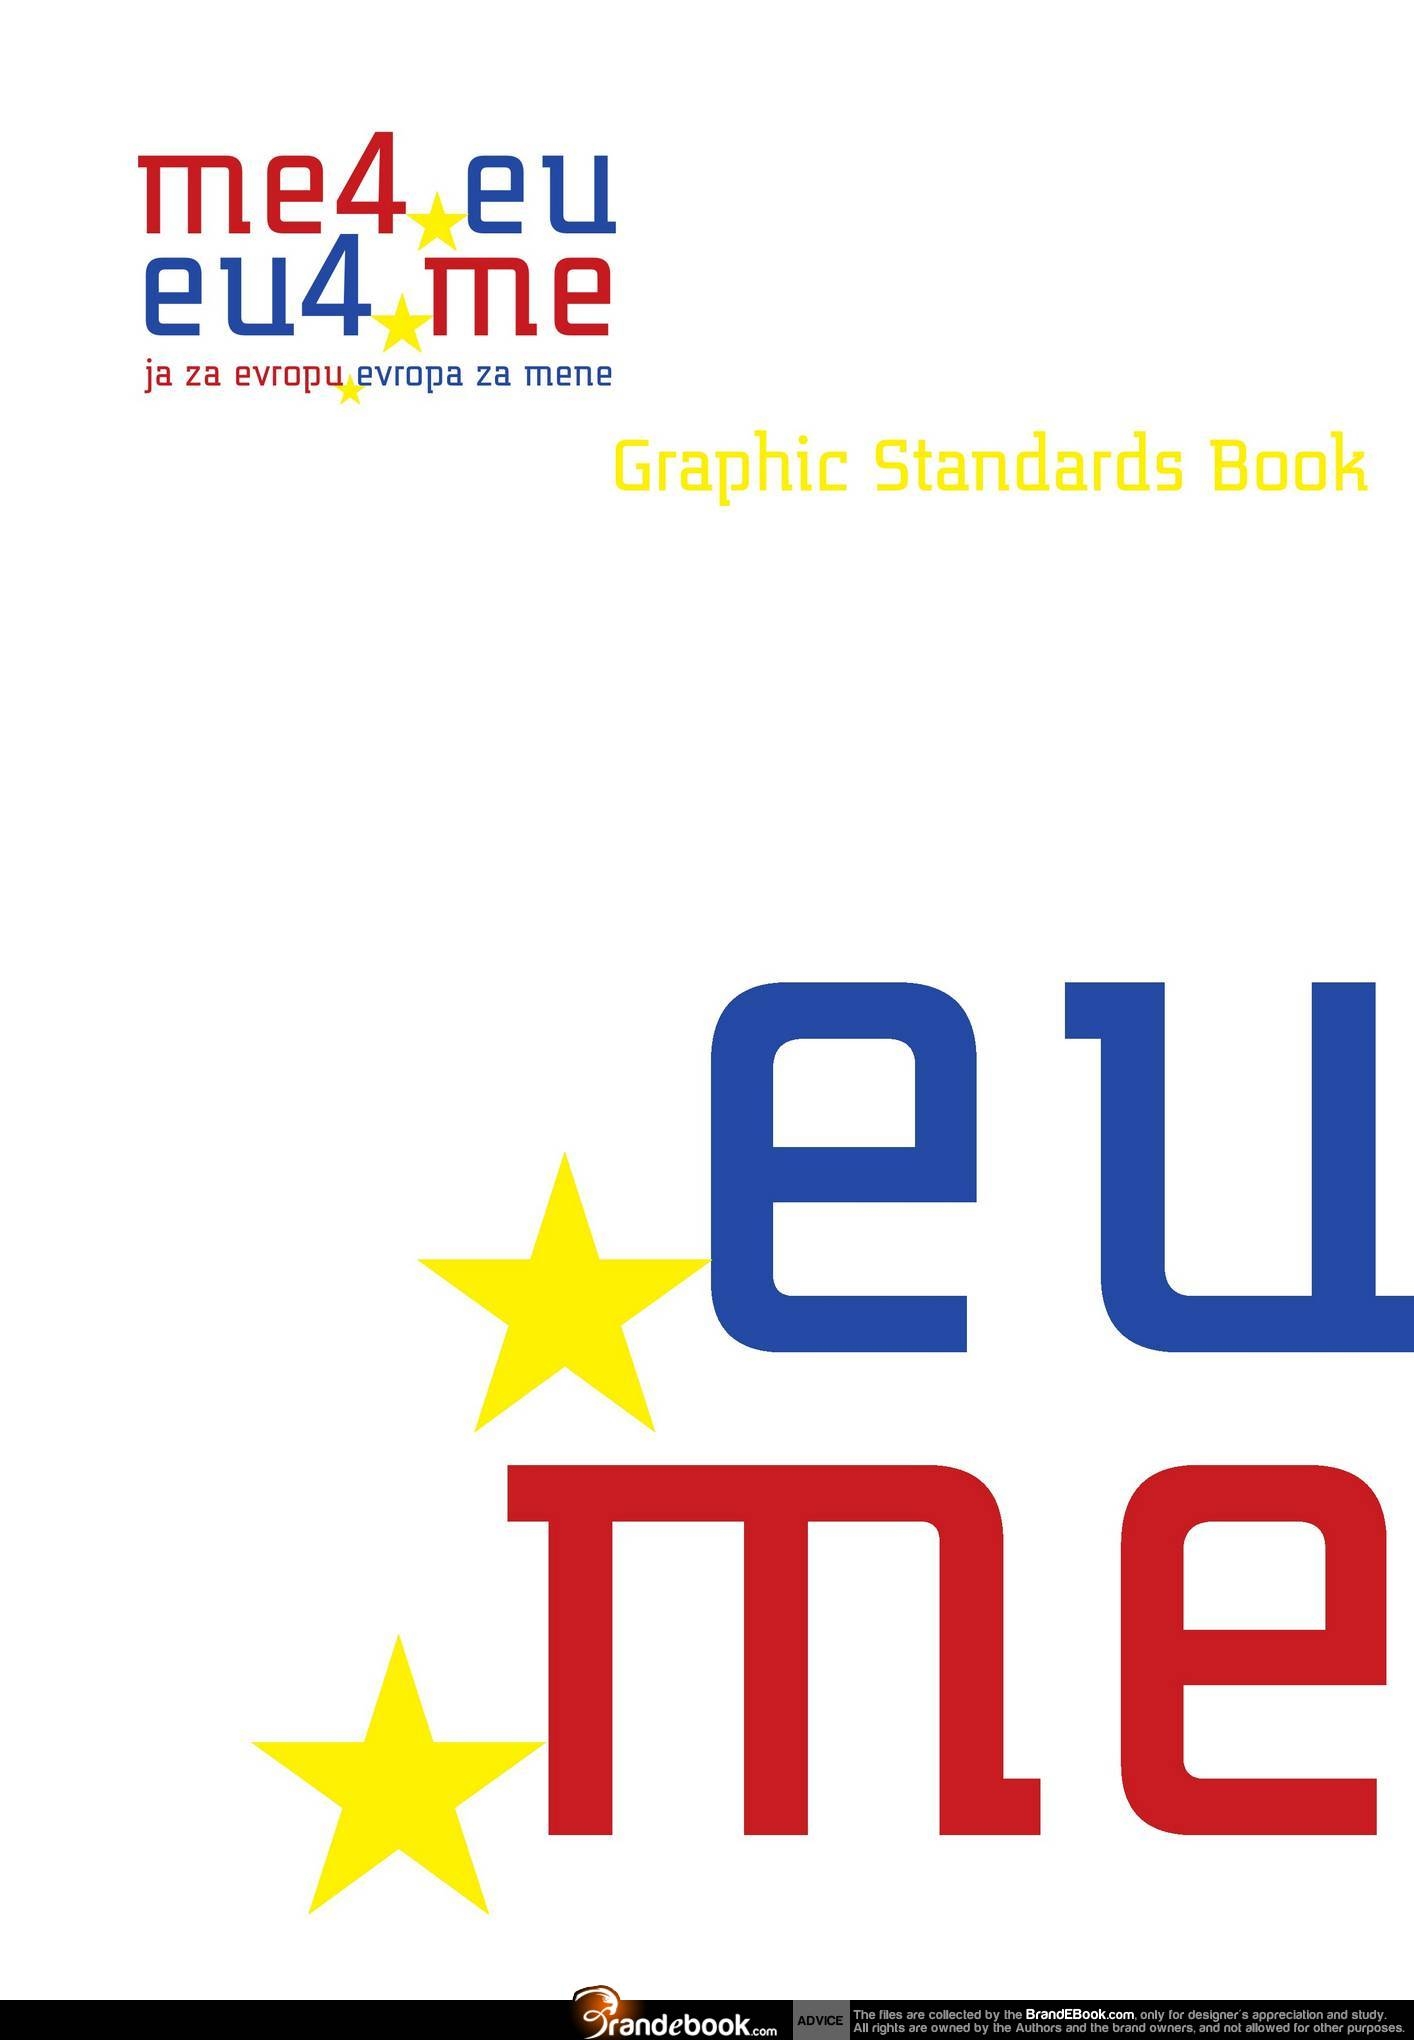 meeu-eu4me Graphic Standards